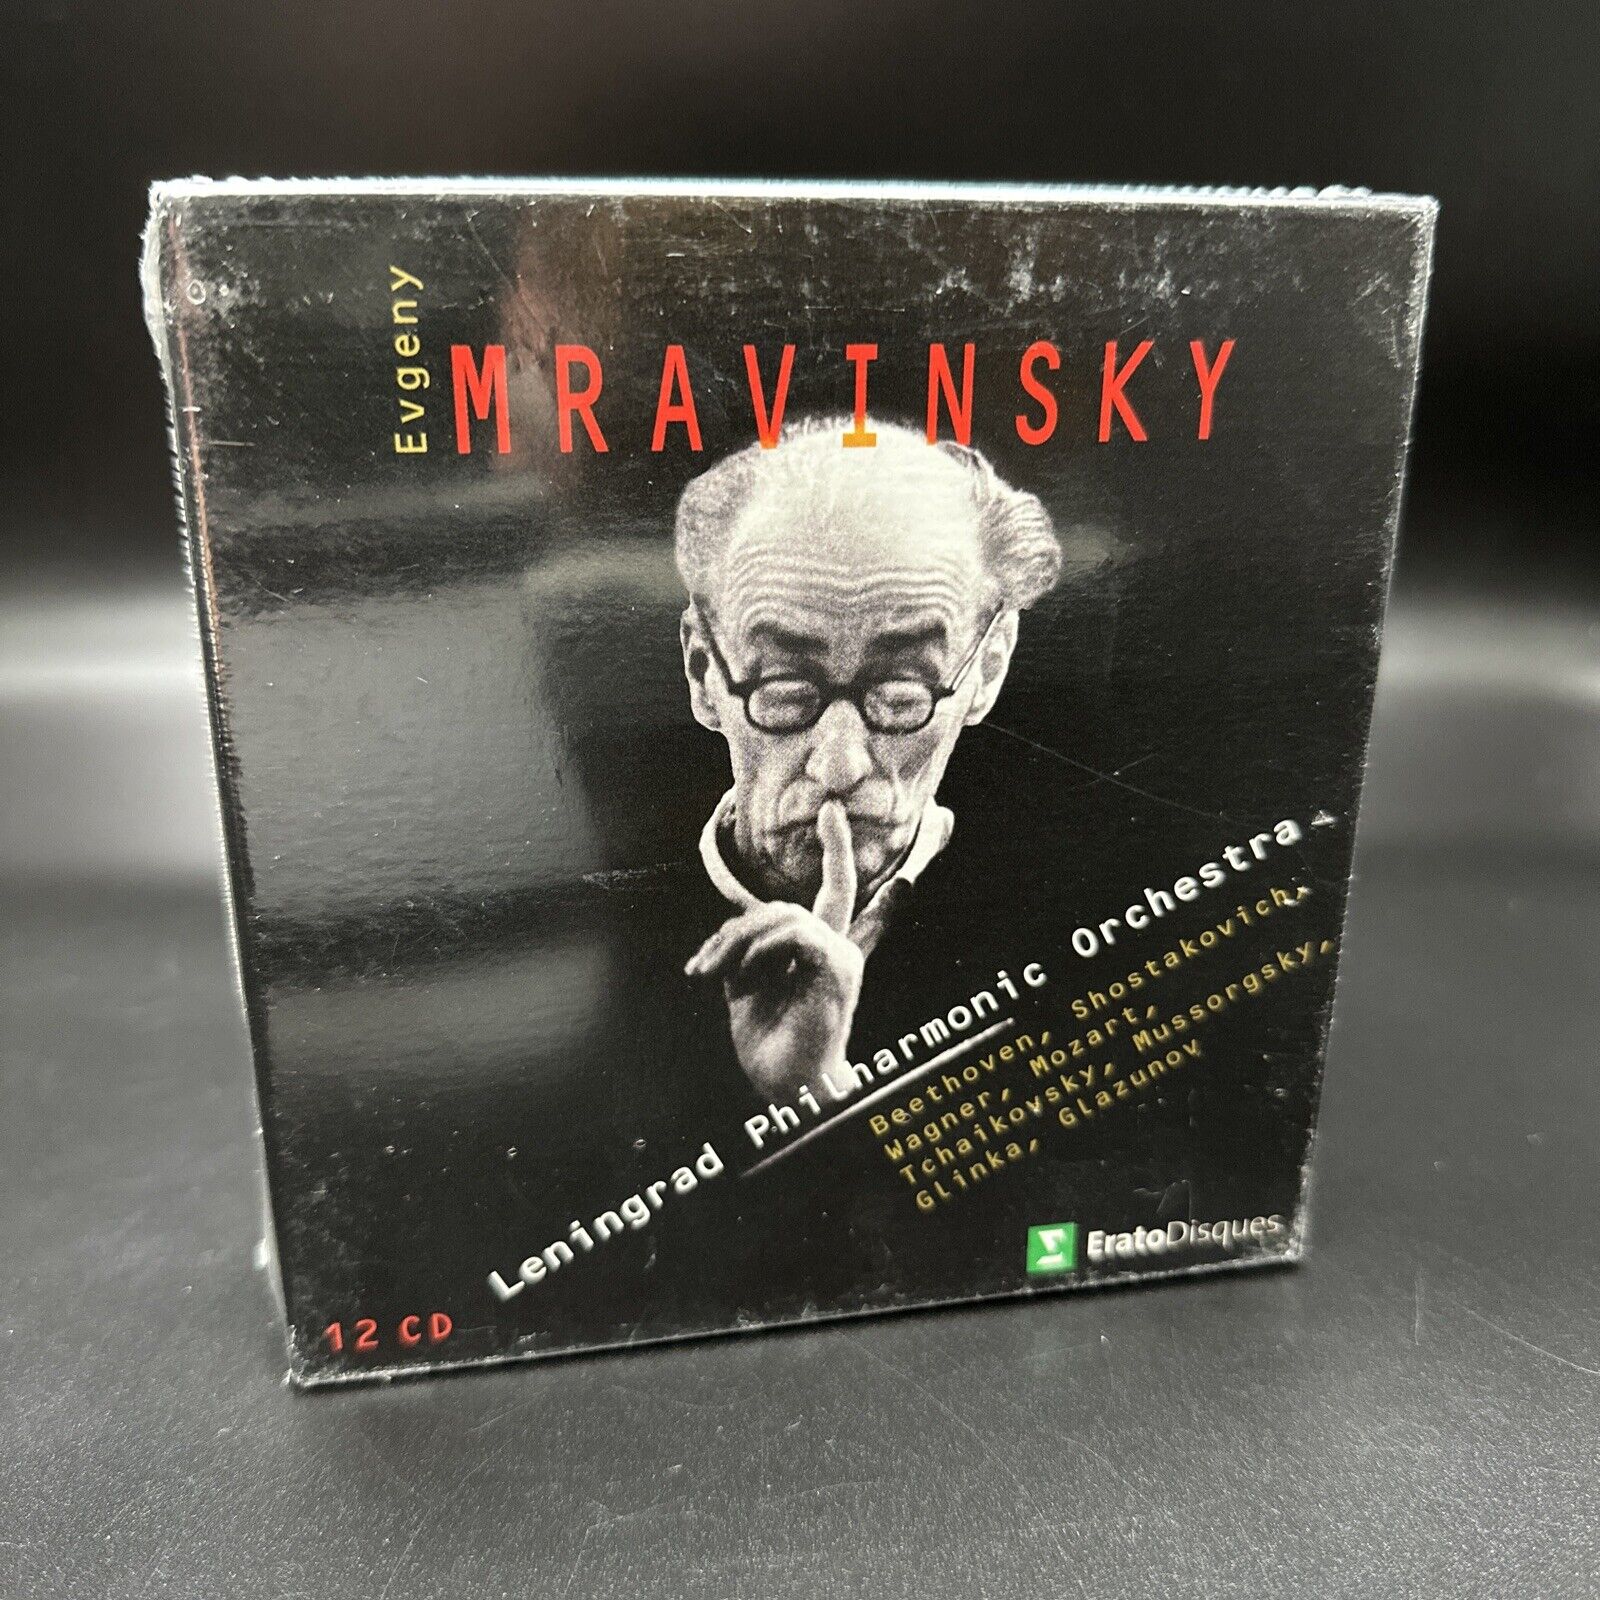 Mravinsky Conducts Leningrad Philharmonic Orchestra [Erato 12 CD Box Set] SEALED